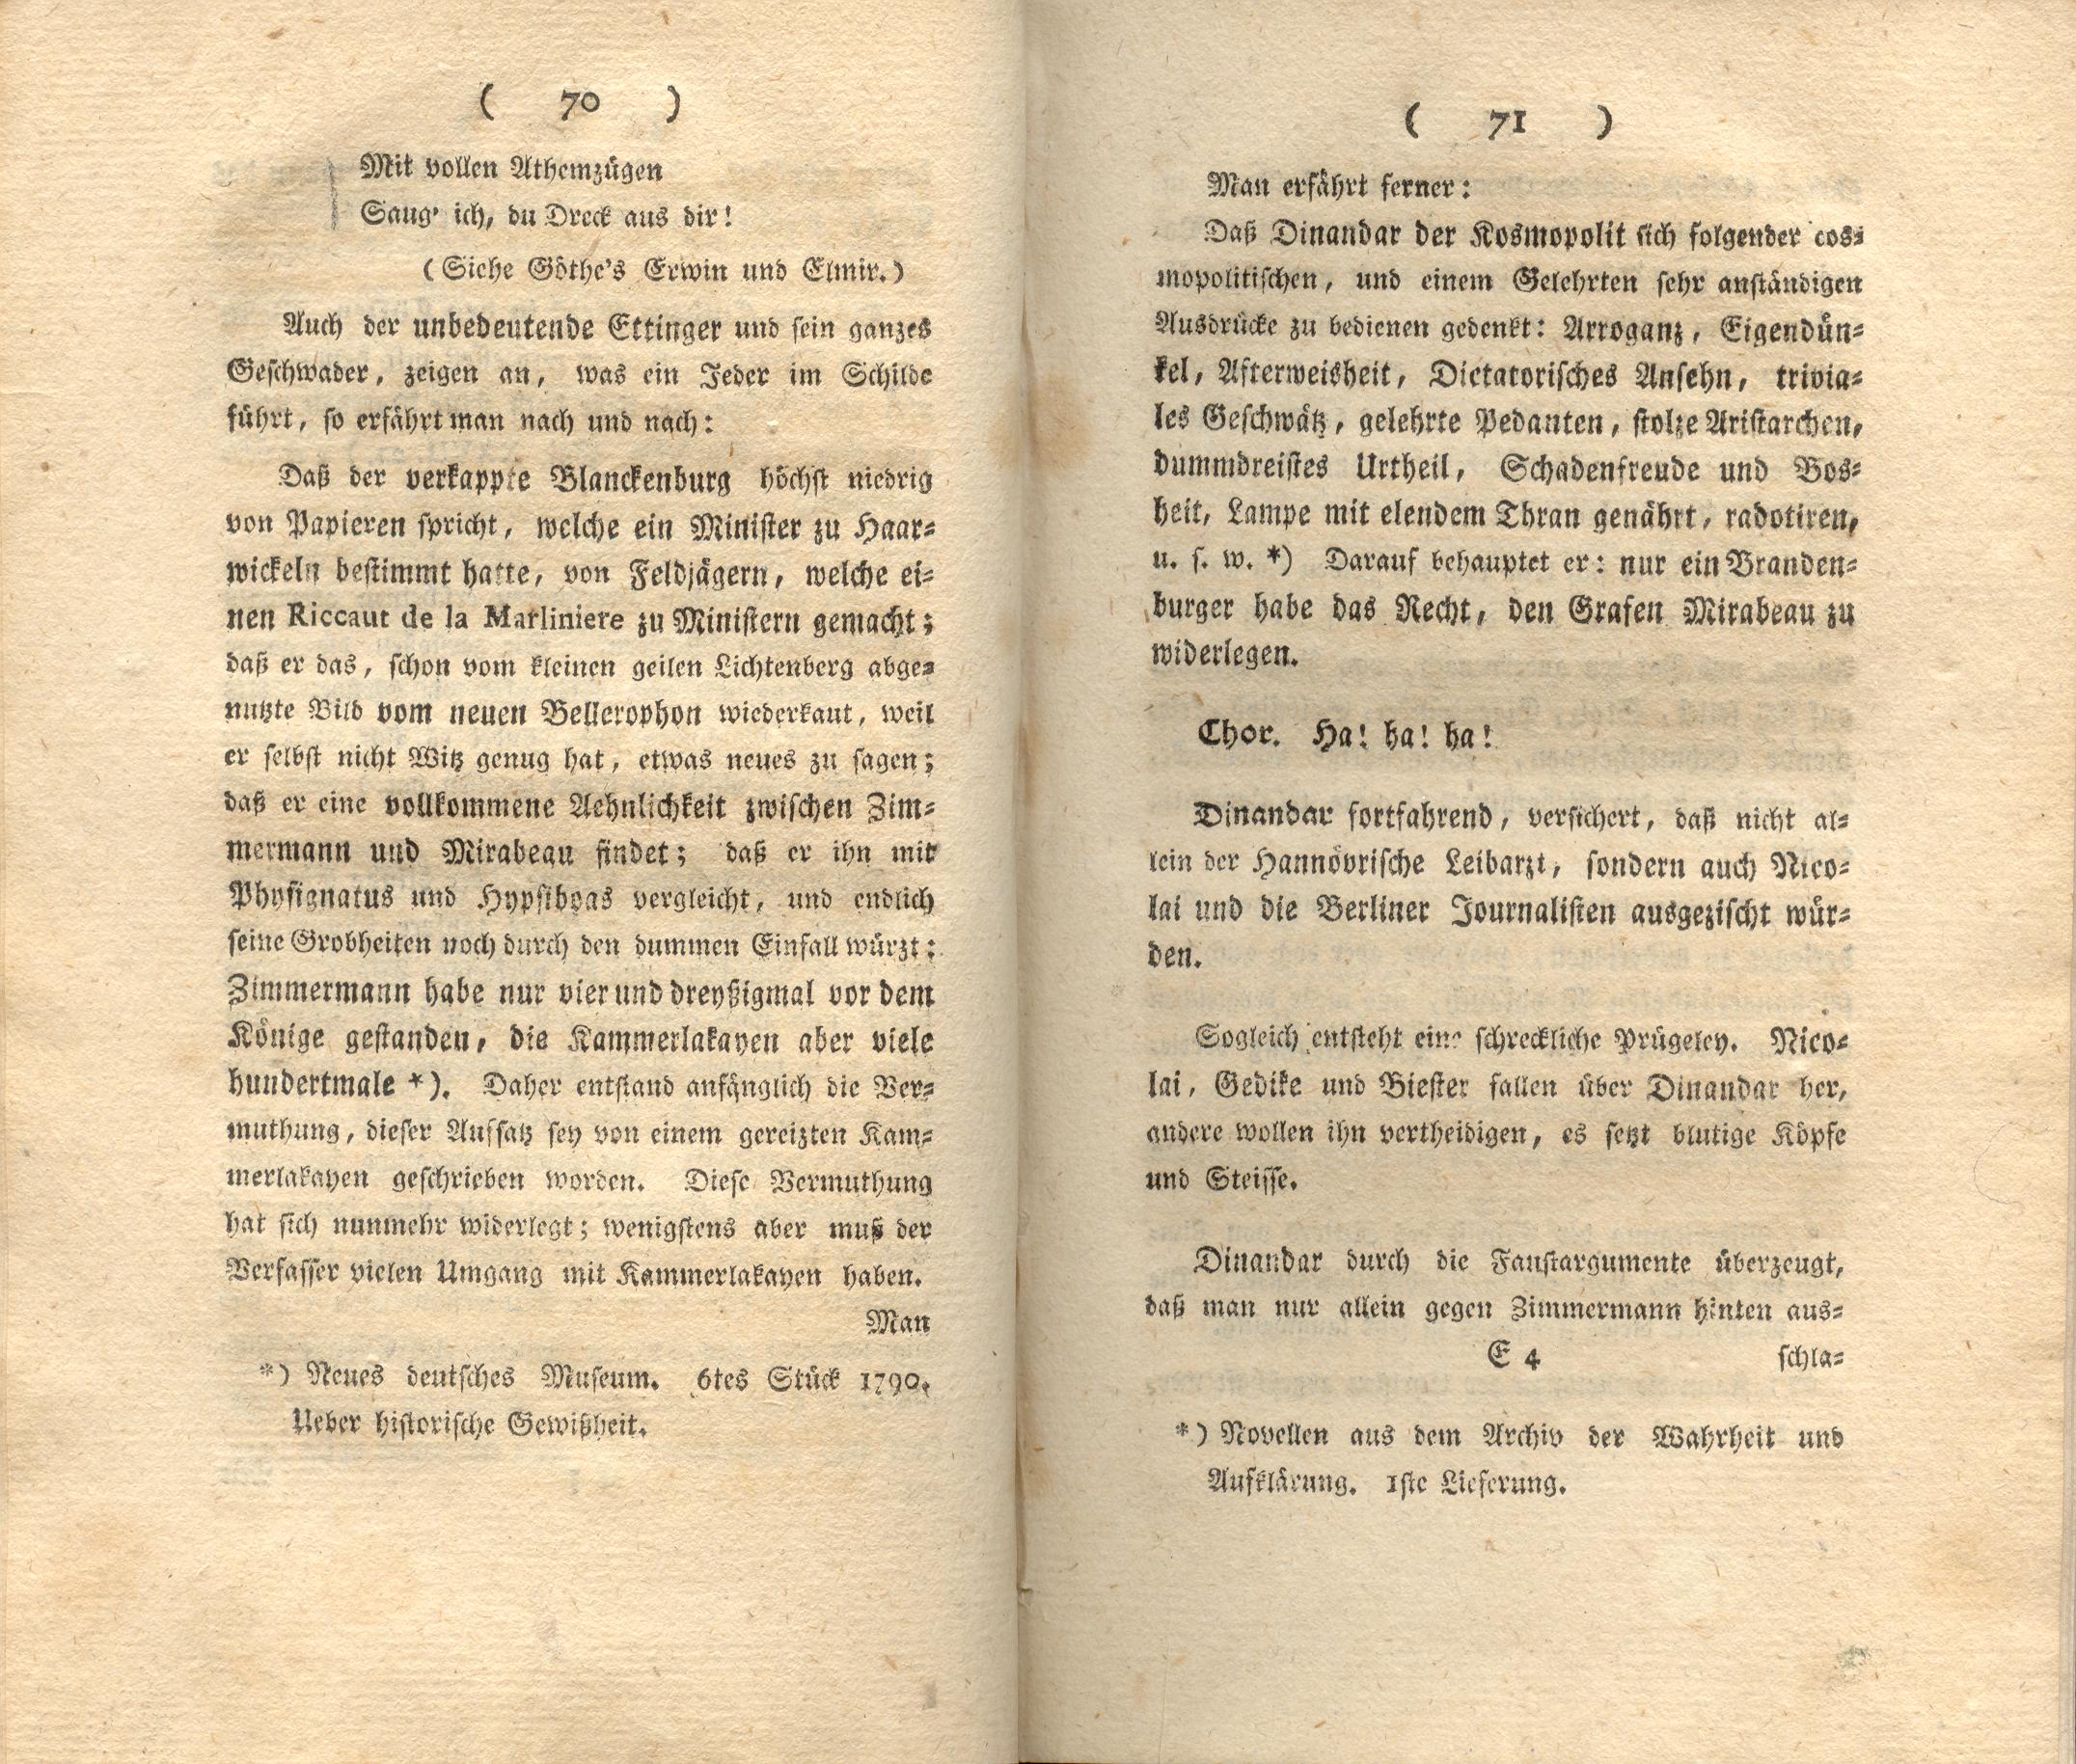 Doctor Bahrdt mit der eisernen Stirn (1790) | 37. (70-71) Main body of text